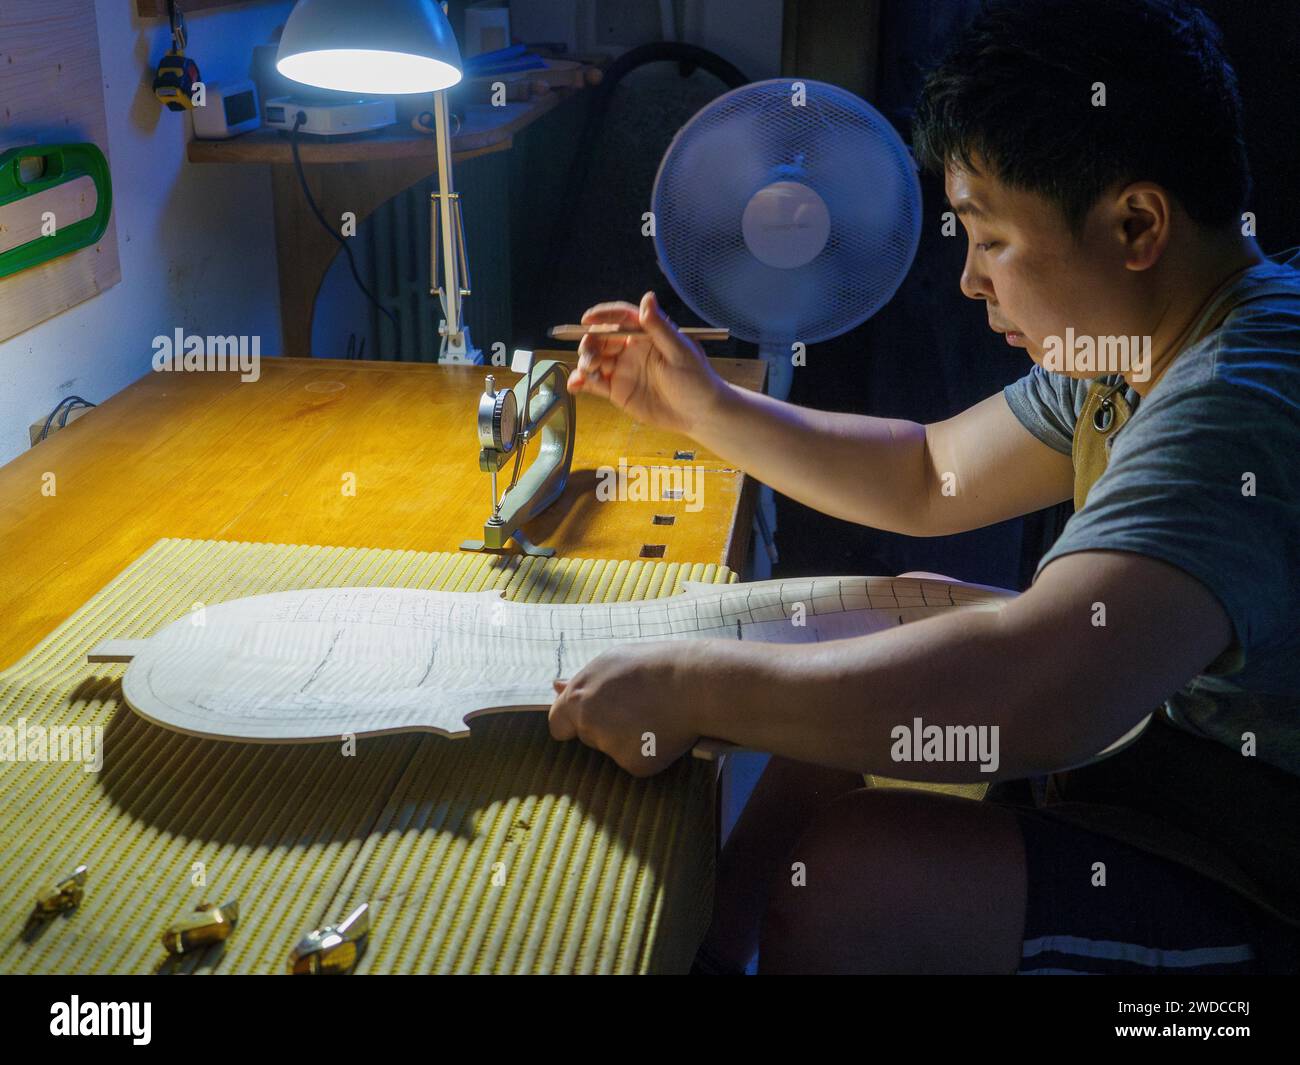 Maître luthier fabricant d'instruments à cordes procède au travail de graduation en cours de plaque arrière violoncelle, en utilisant des plans, calibre de jauge d'épaisseur Banque D'Images